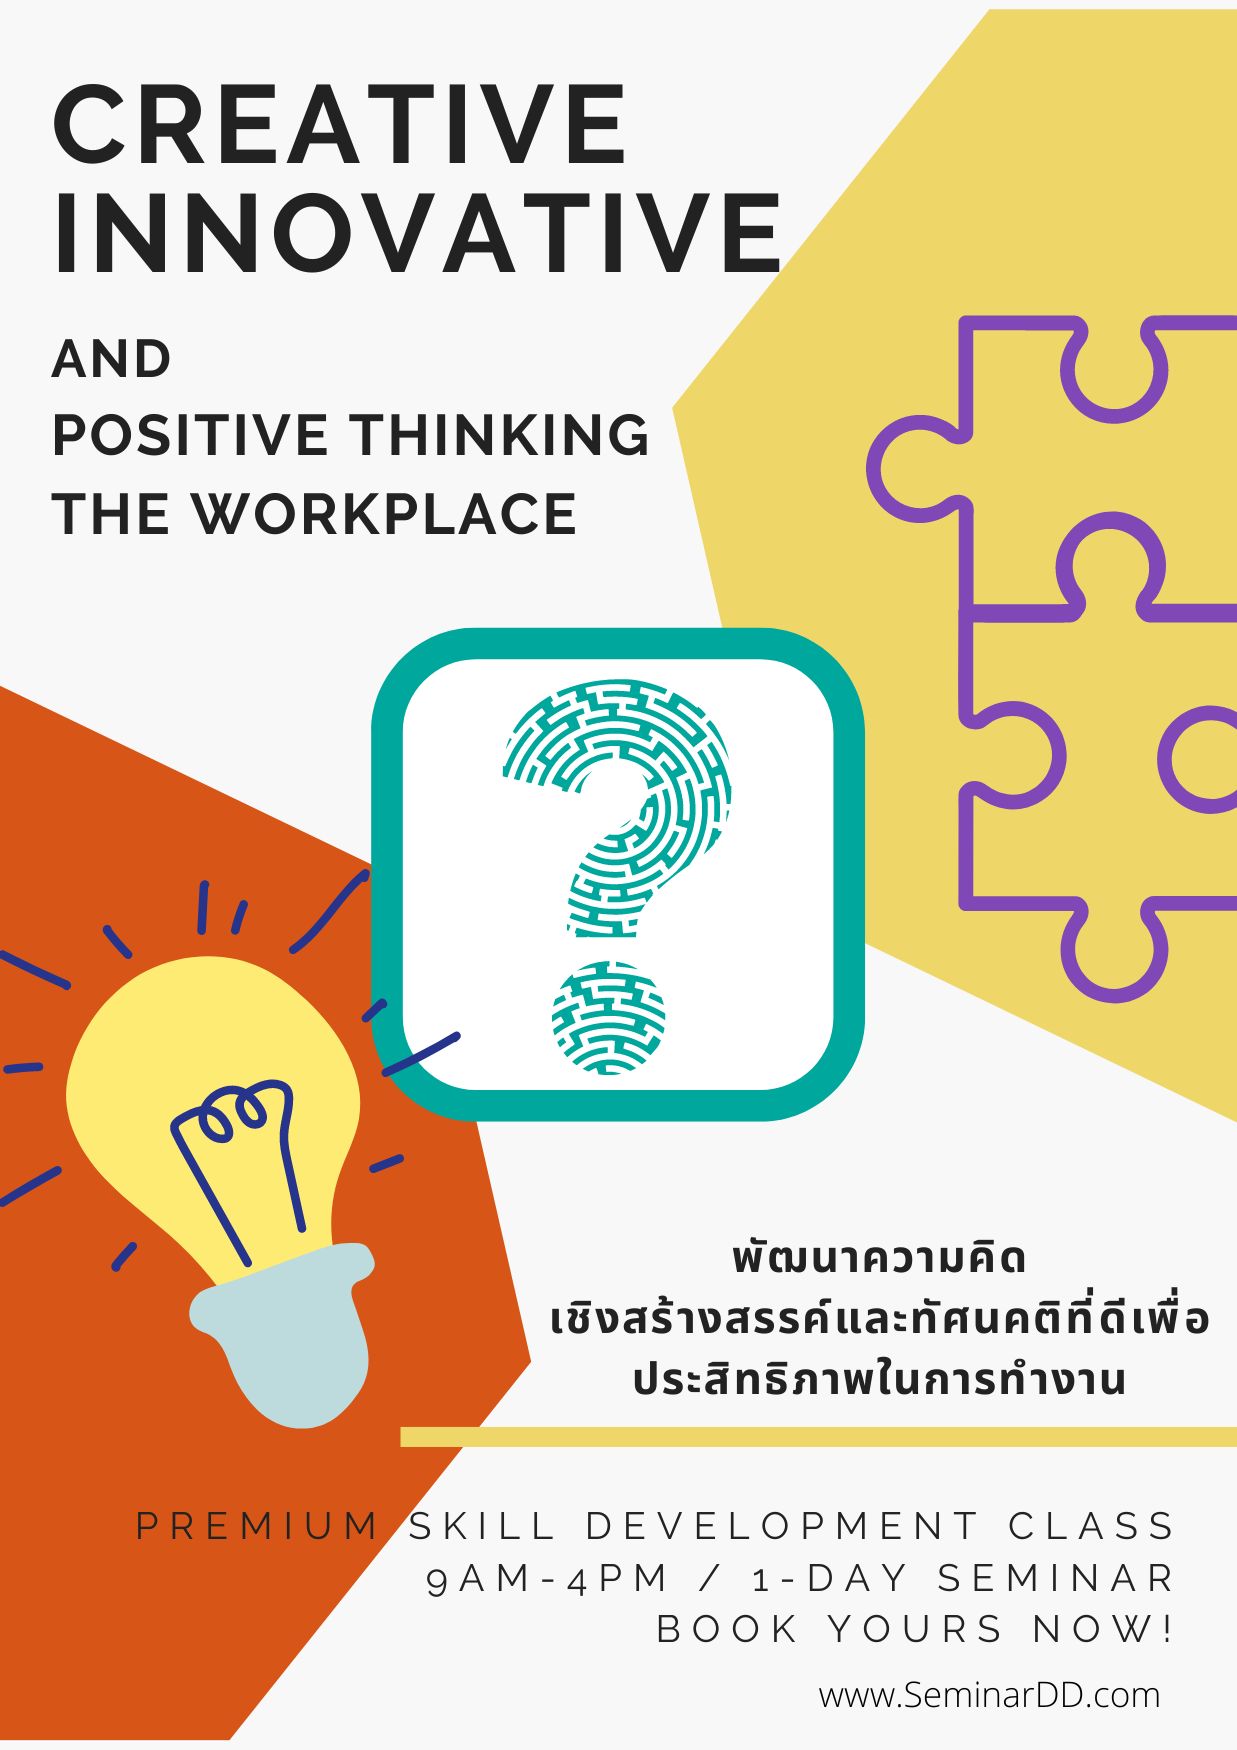 พัฒนาความคิดเชิงสร้างสรรค์ และทัศนคติที่ดีเพื่อประสิทธิภาพการทำงาน ( Creative Innovative and Positive Thinking in the Workplace )